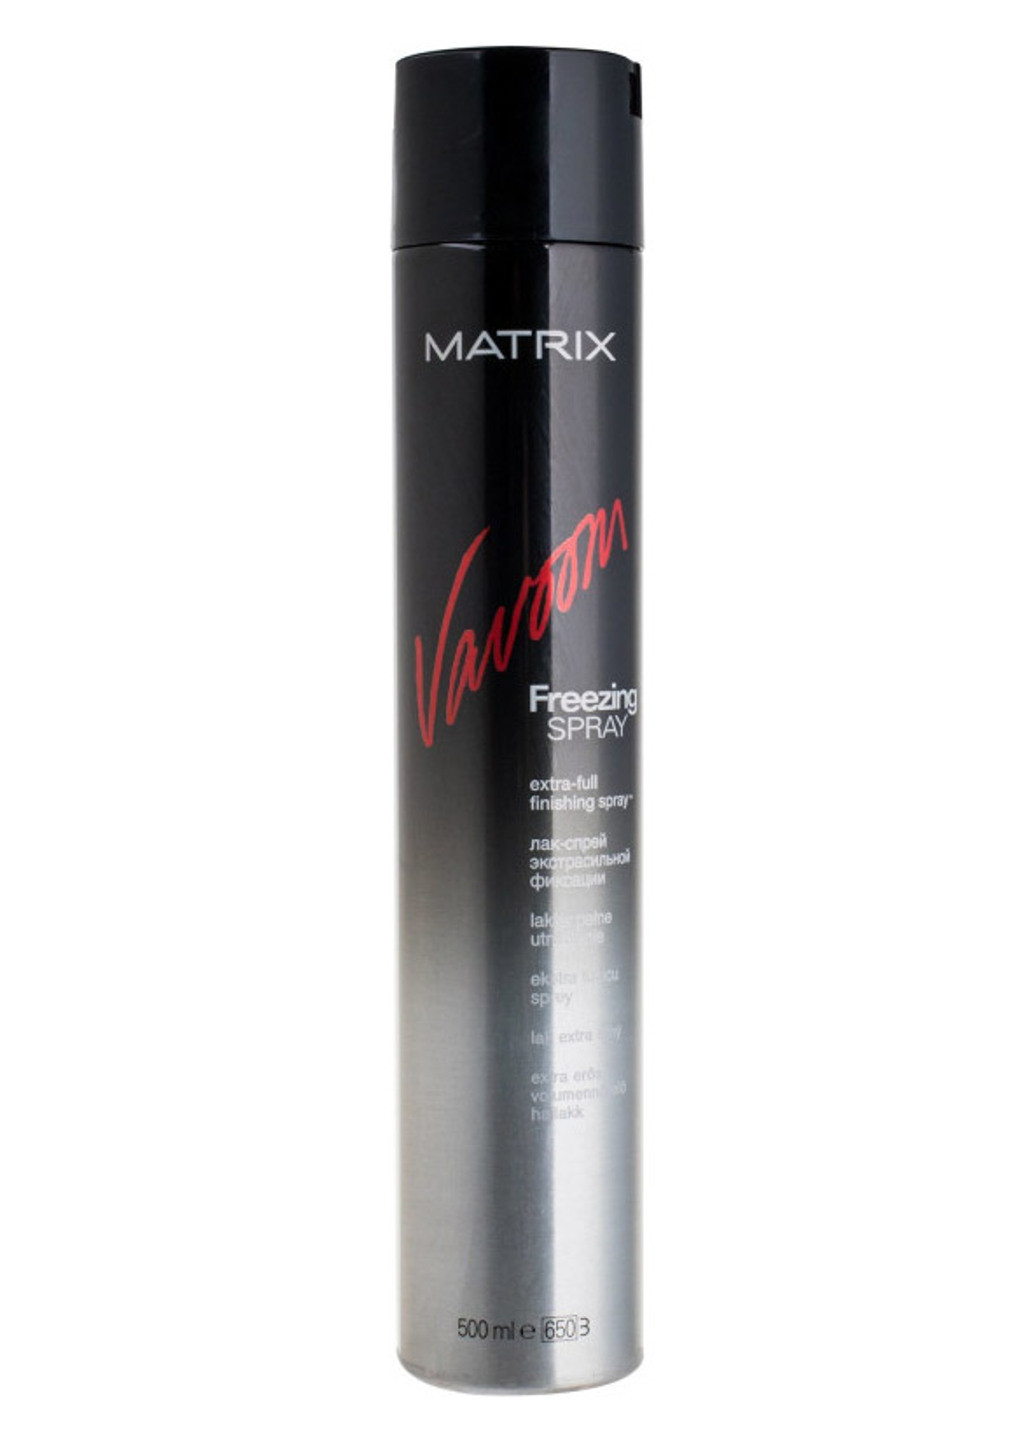 Лак-спрей для волос экстрасильной фиксации Vavoom Freezing Spray Extra-full 500 мл Matrix (202165180)